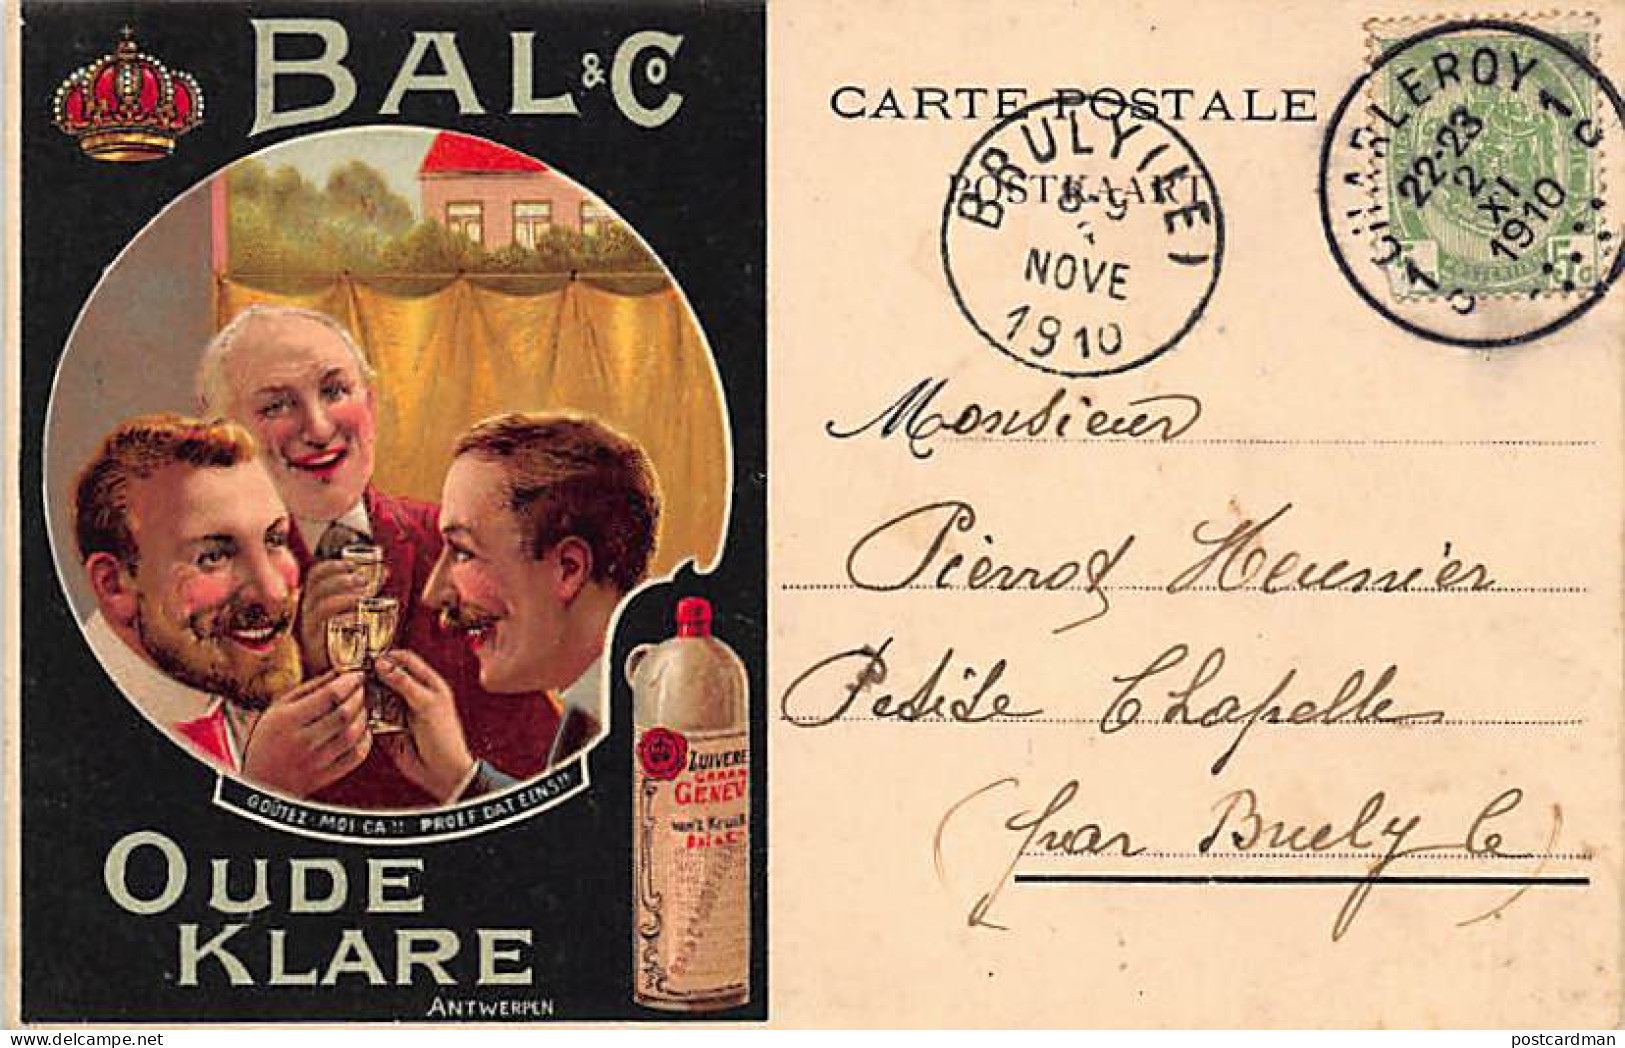 ANTWERPEN - Bal And Co. - Oude Klare - Advertising Postcard. - Antwerpen